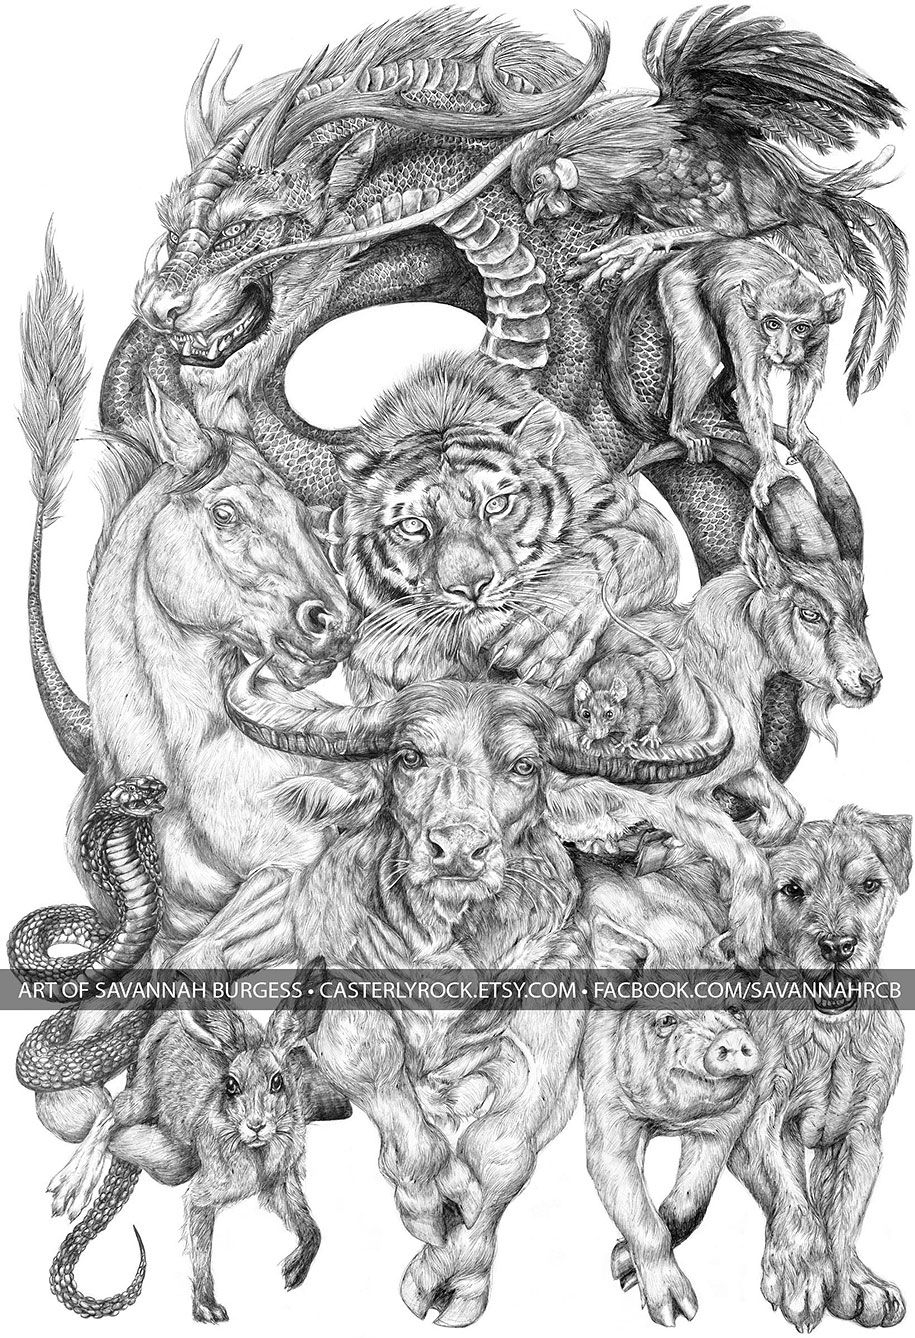 zodíac-xinès-animals-dibuix-gegant-casterlyrock-sabana-burgess-18